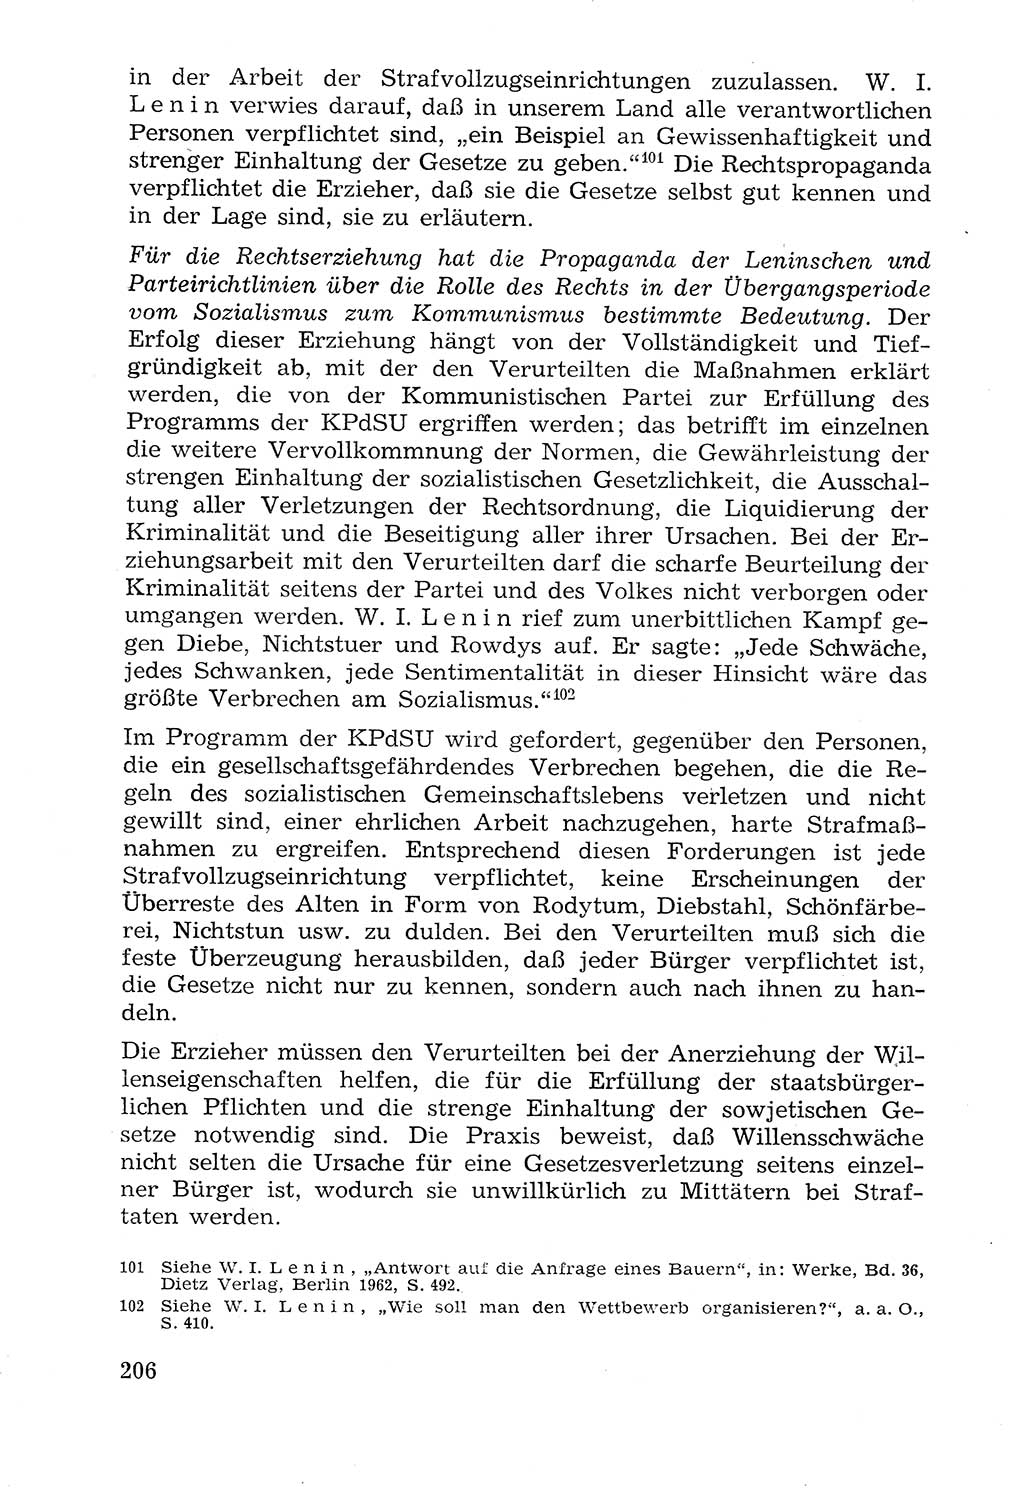 Lehrbuch der Strafvollzugspädagogik [Deutsche Demokratische Republik (DDR)] 1969, Seite 206 (Lb. SV-Pd. DDR 1969, S. 206)